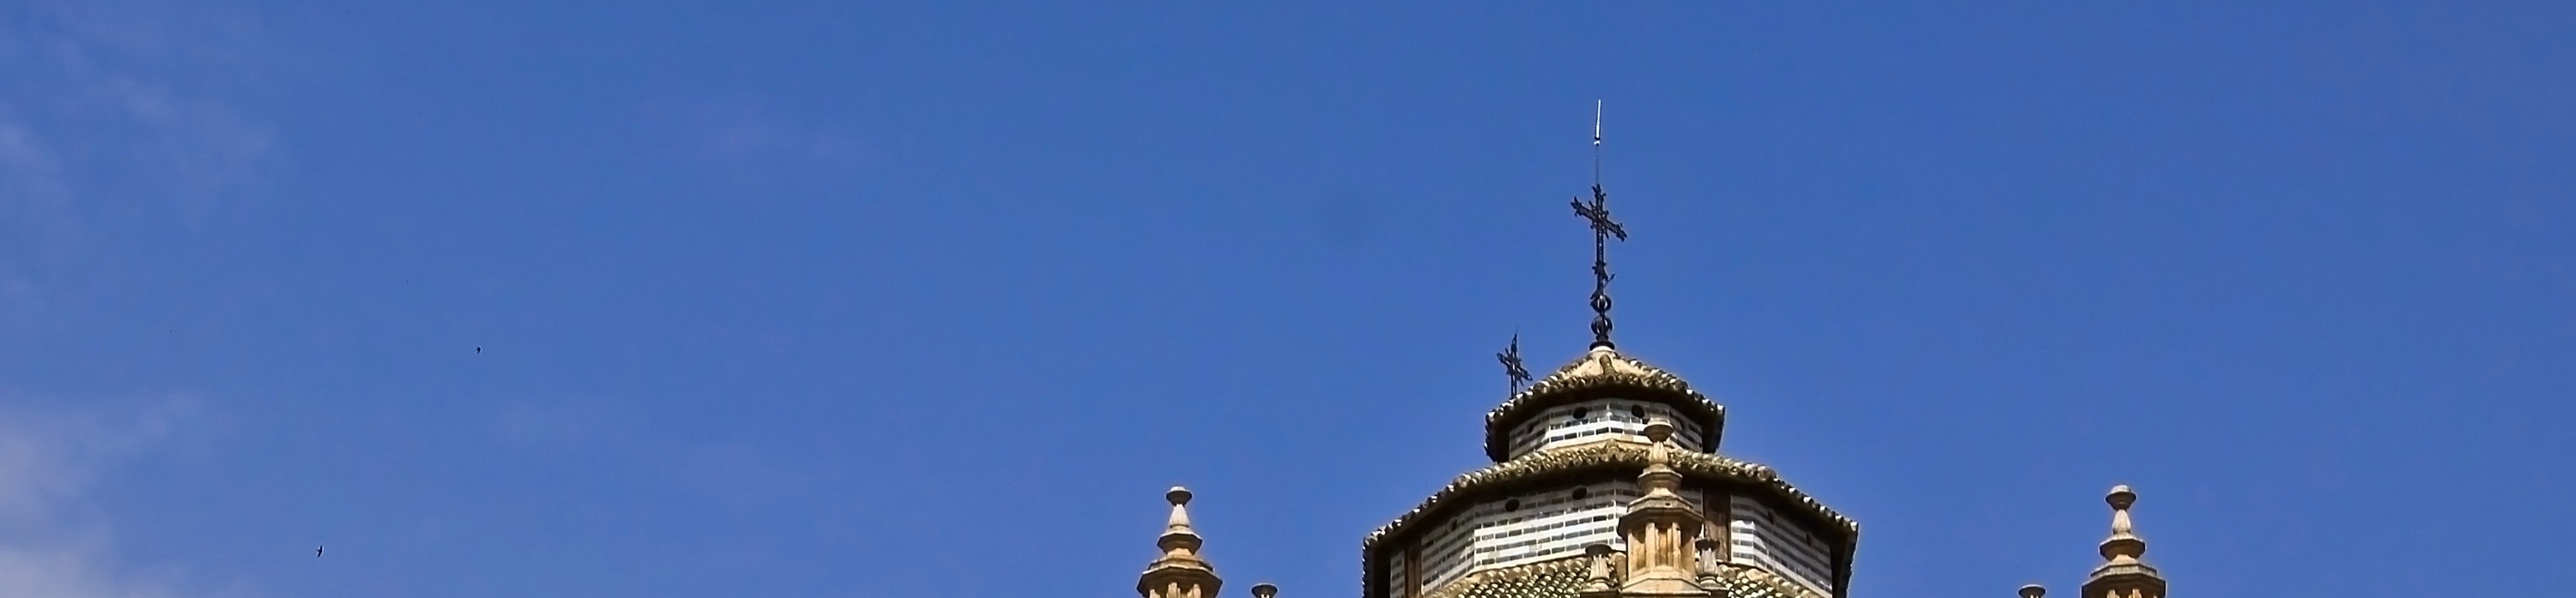 阿爾罕布拉宮 & 格拉納達主教座堂 & 皇家教堂導覽遊